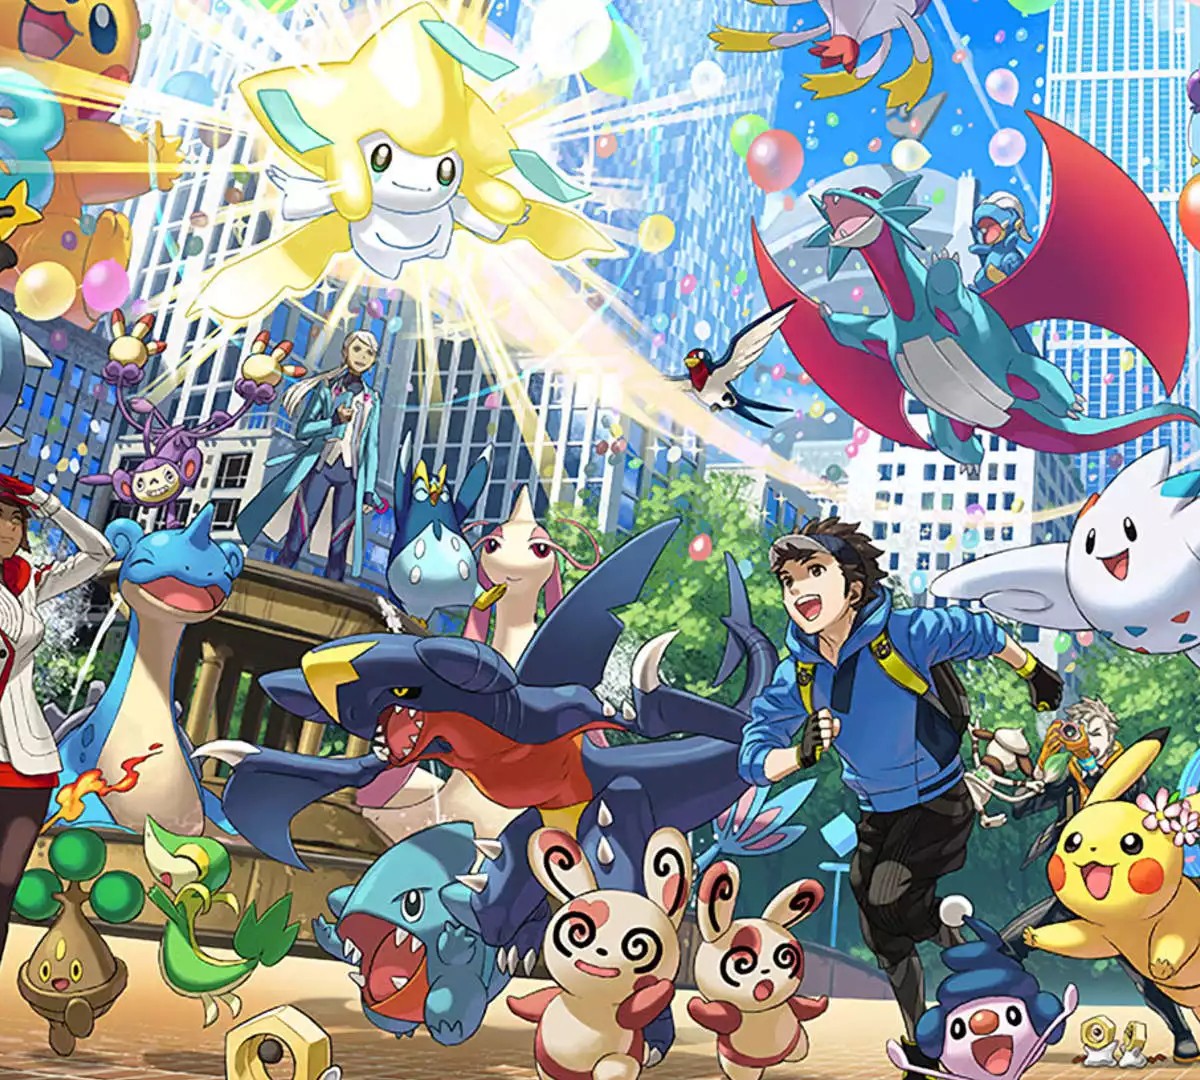 Novos Pokémon e Personagens? NOVO Trailer DLC na Pokémon Presents